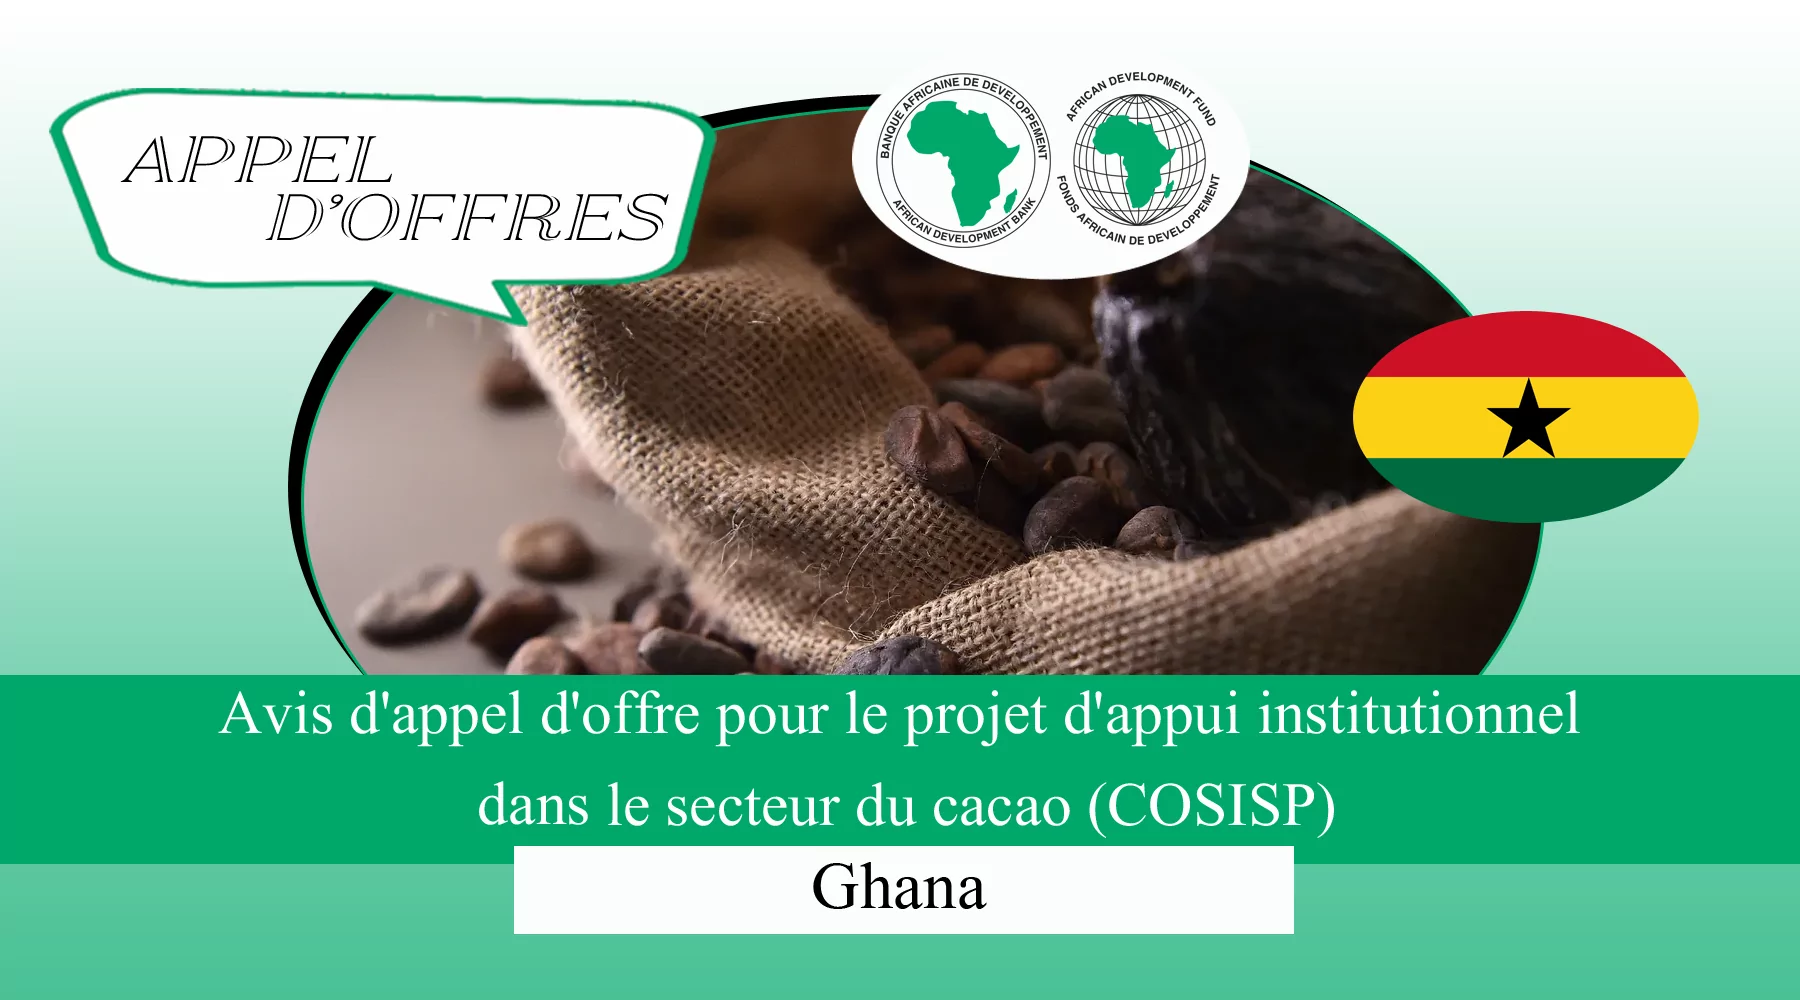 Avis d’appel d’offre pour le projet d’appui institutionnel dans le secteur du cacao (COSISP), Ghana